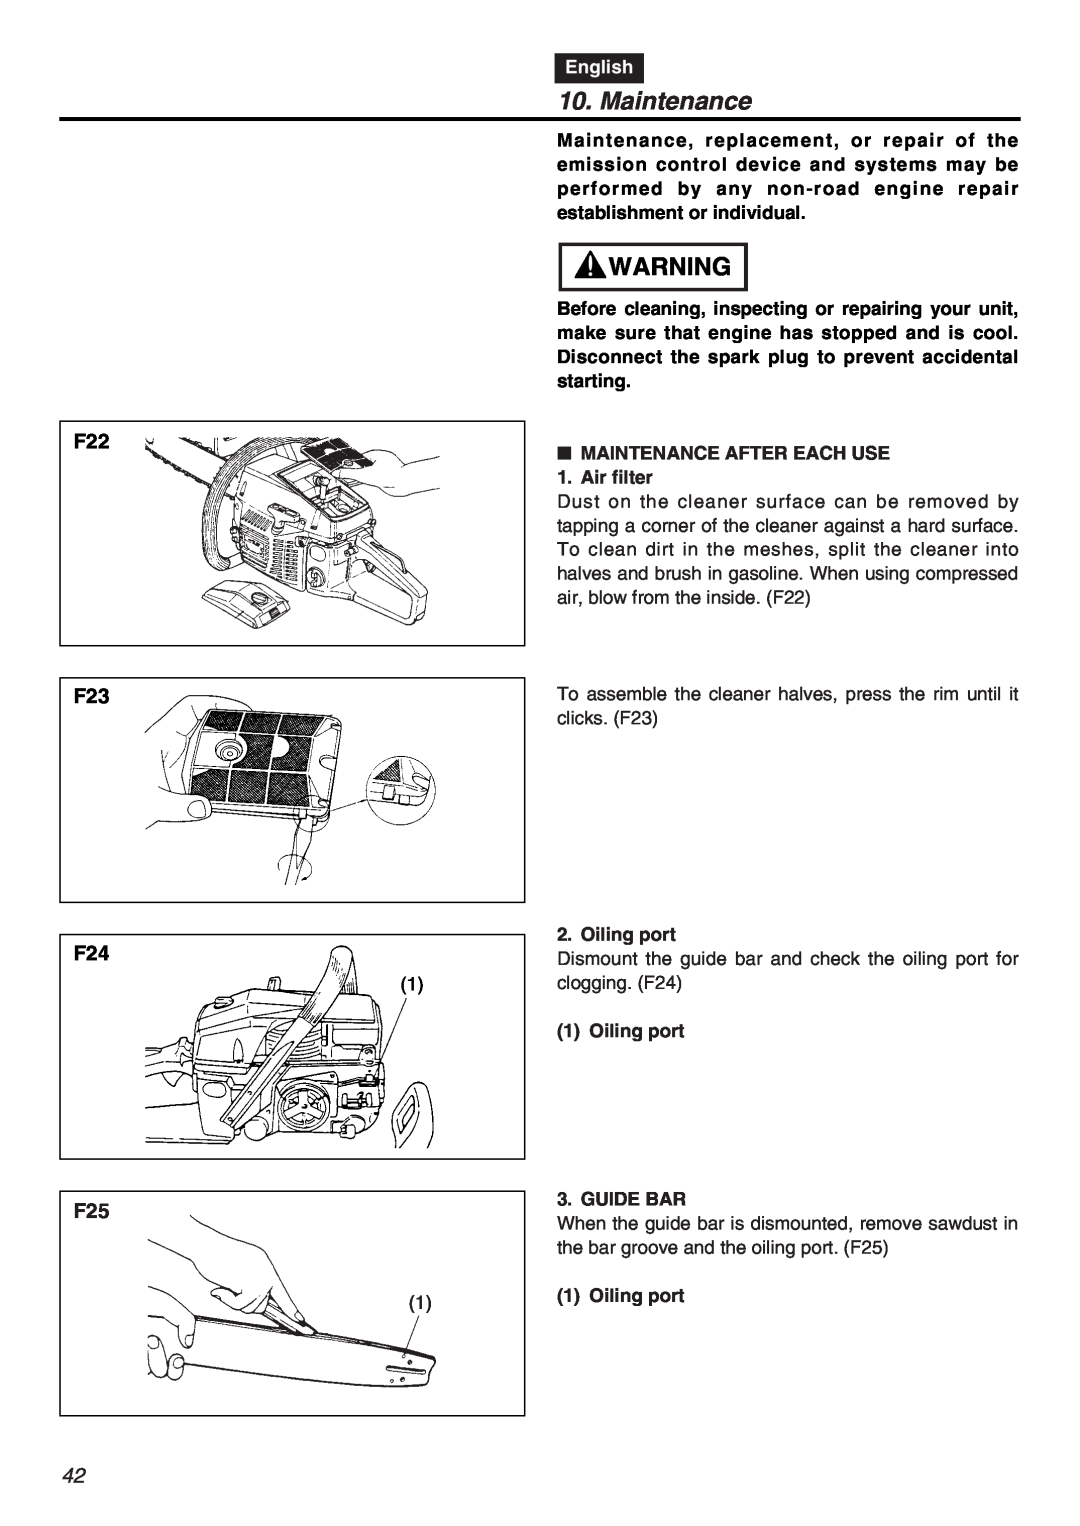 RedMax G5000AVS manual Maintenance, F22 F23 F24 F25, English 